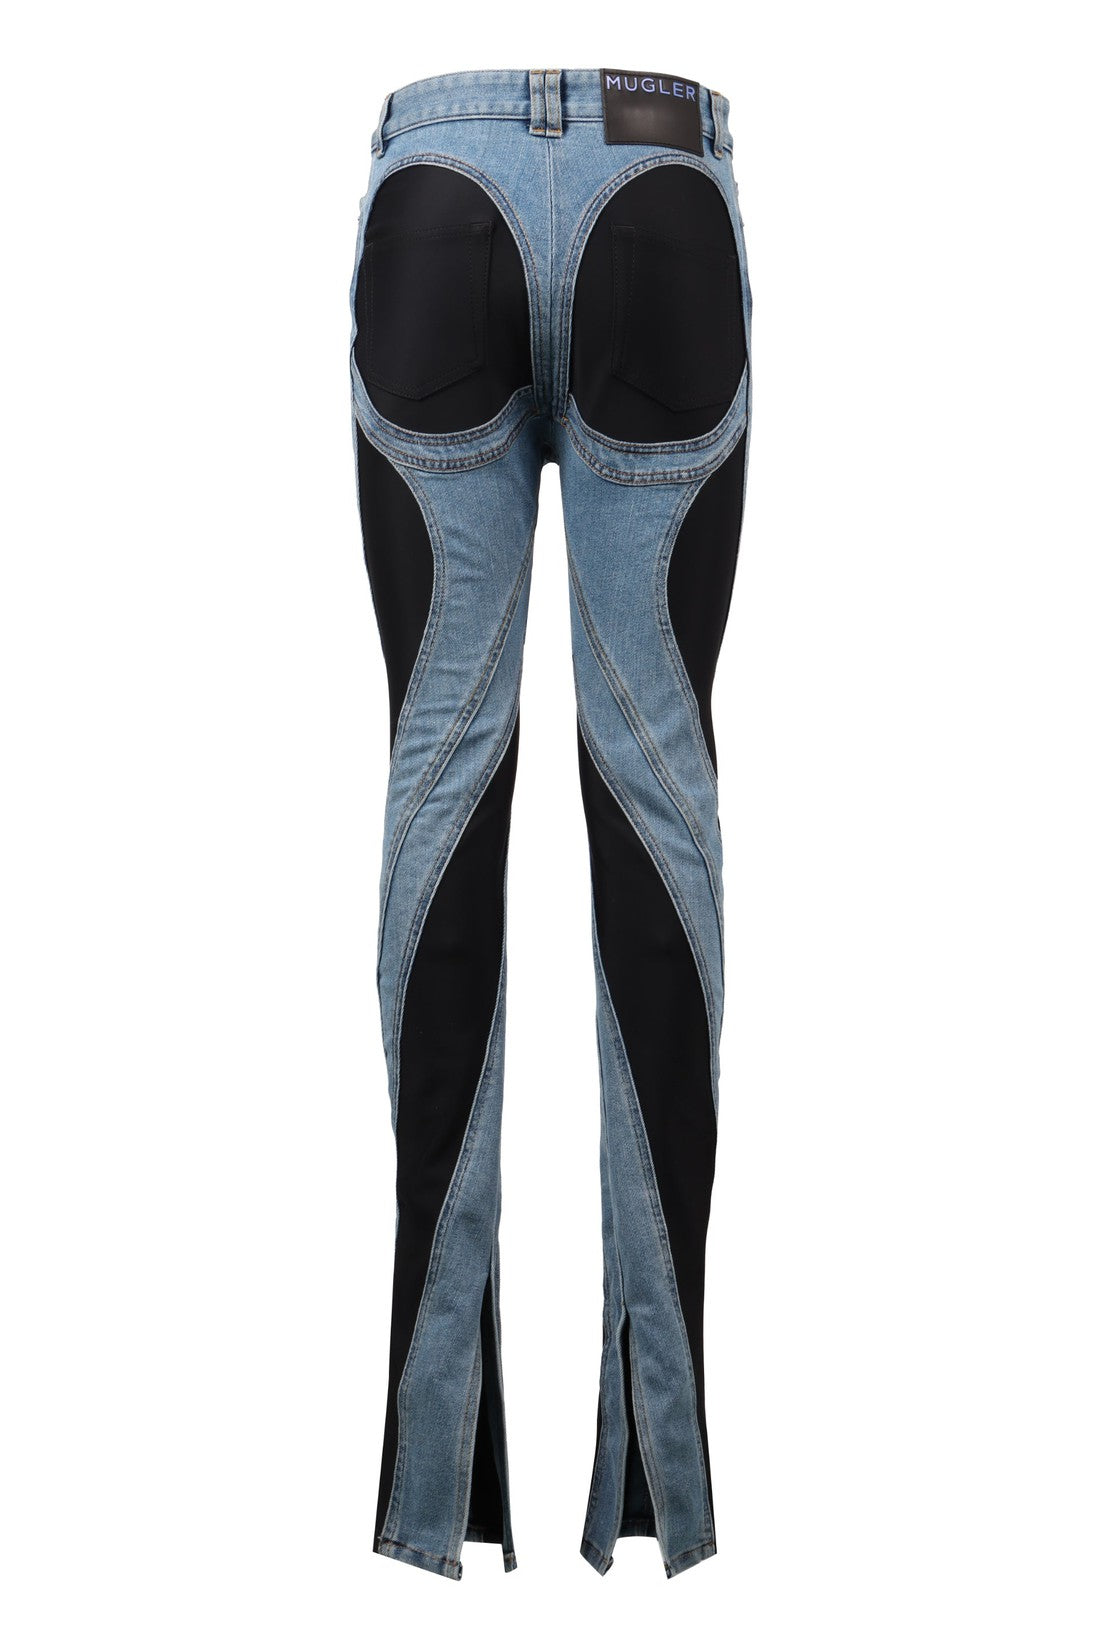 Mugler-OUTLET-SALE-Spiral skinny jeans-ARCHIVIST